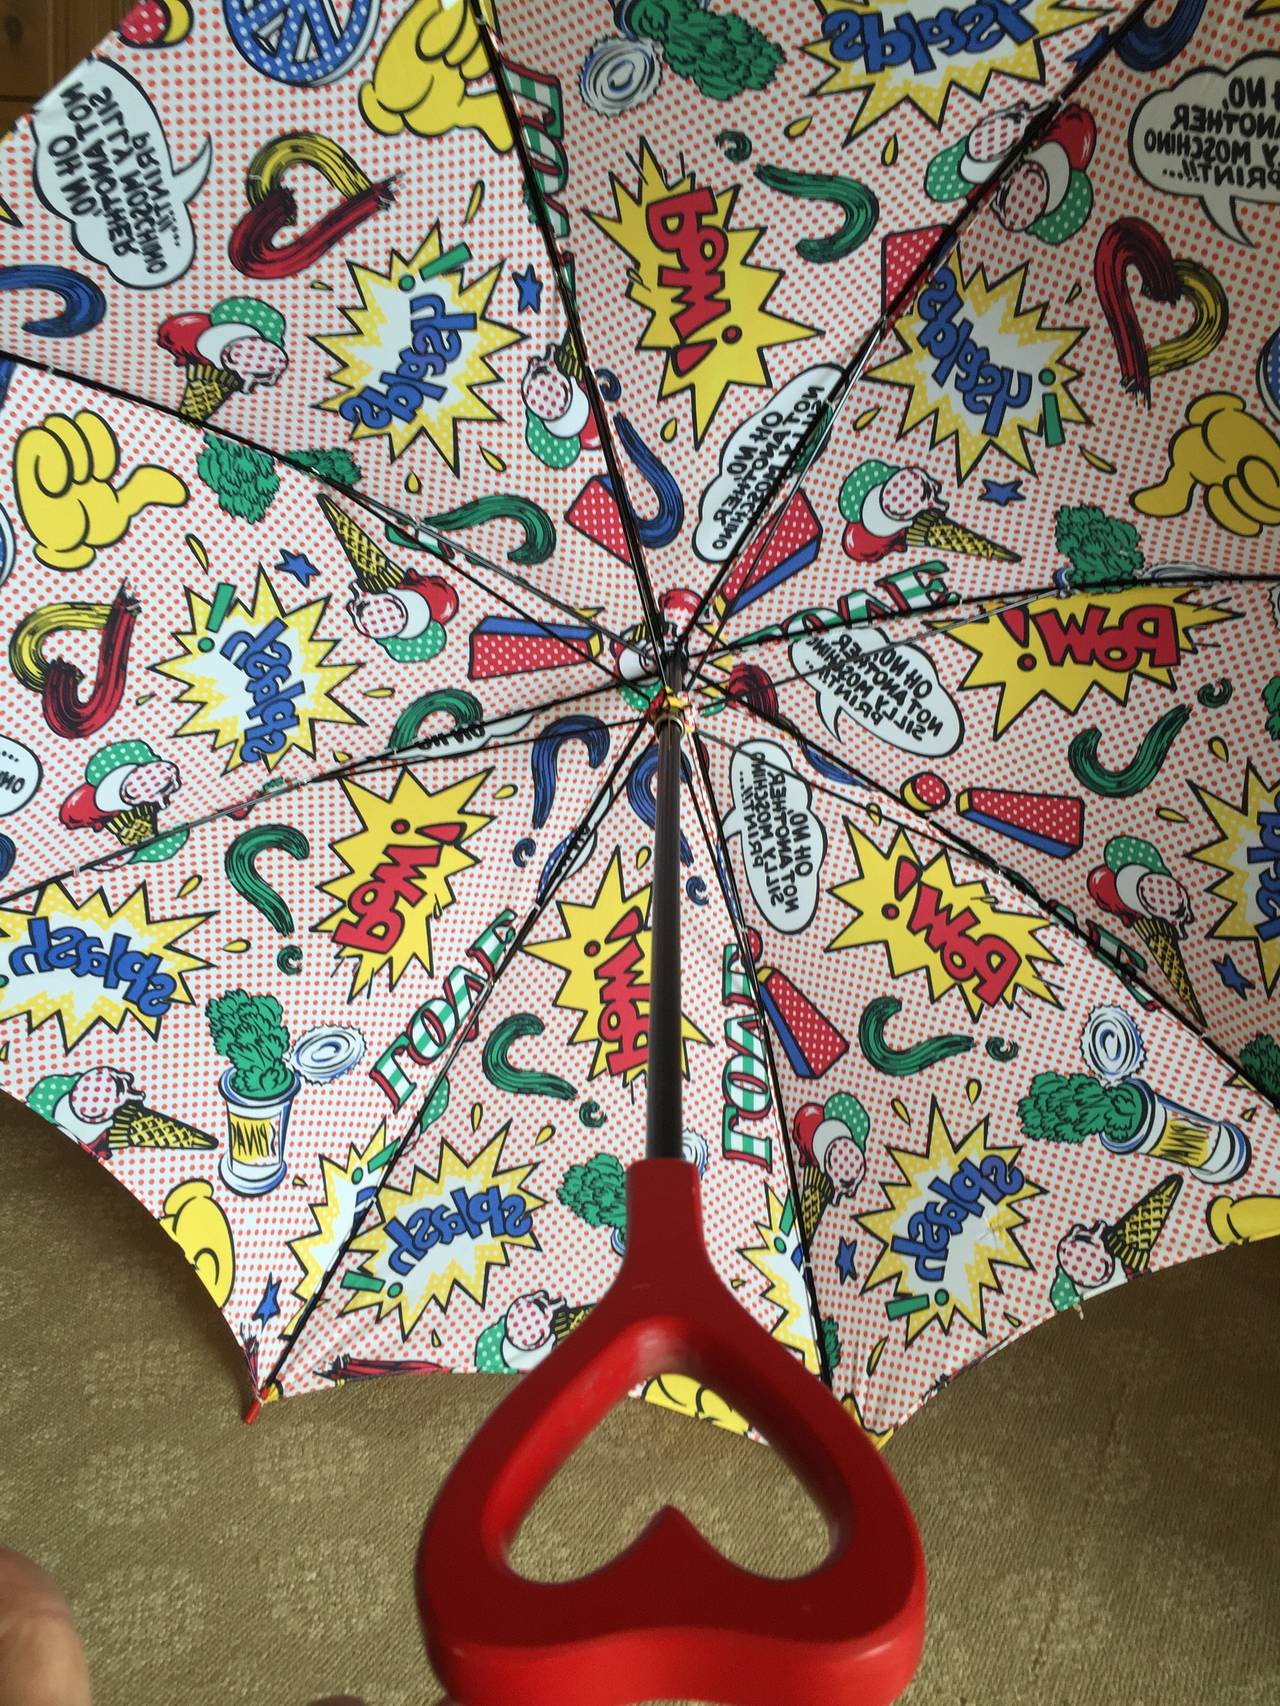 Moschino 1991 Lichtenstein Inspired Umbrella with Heart Handle 3